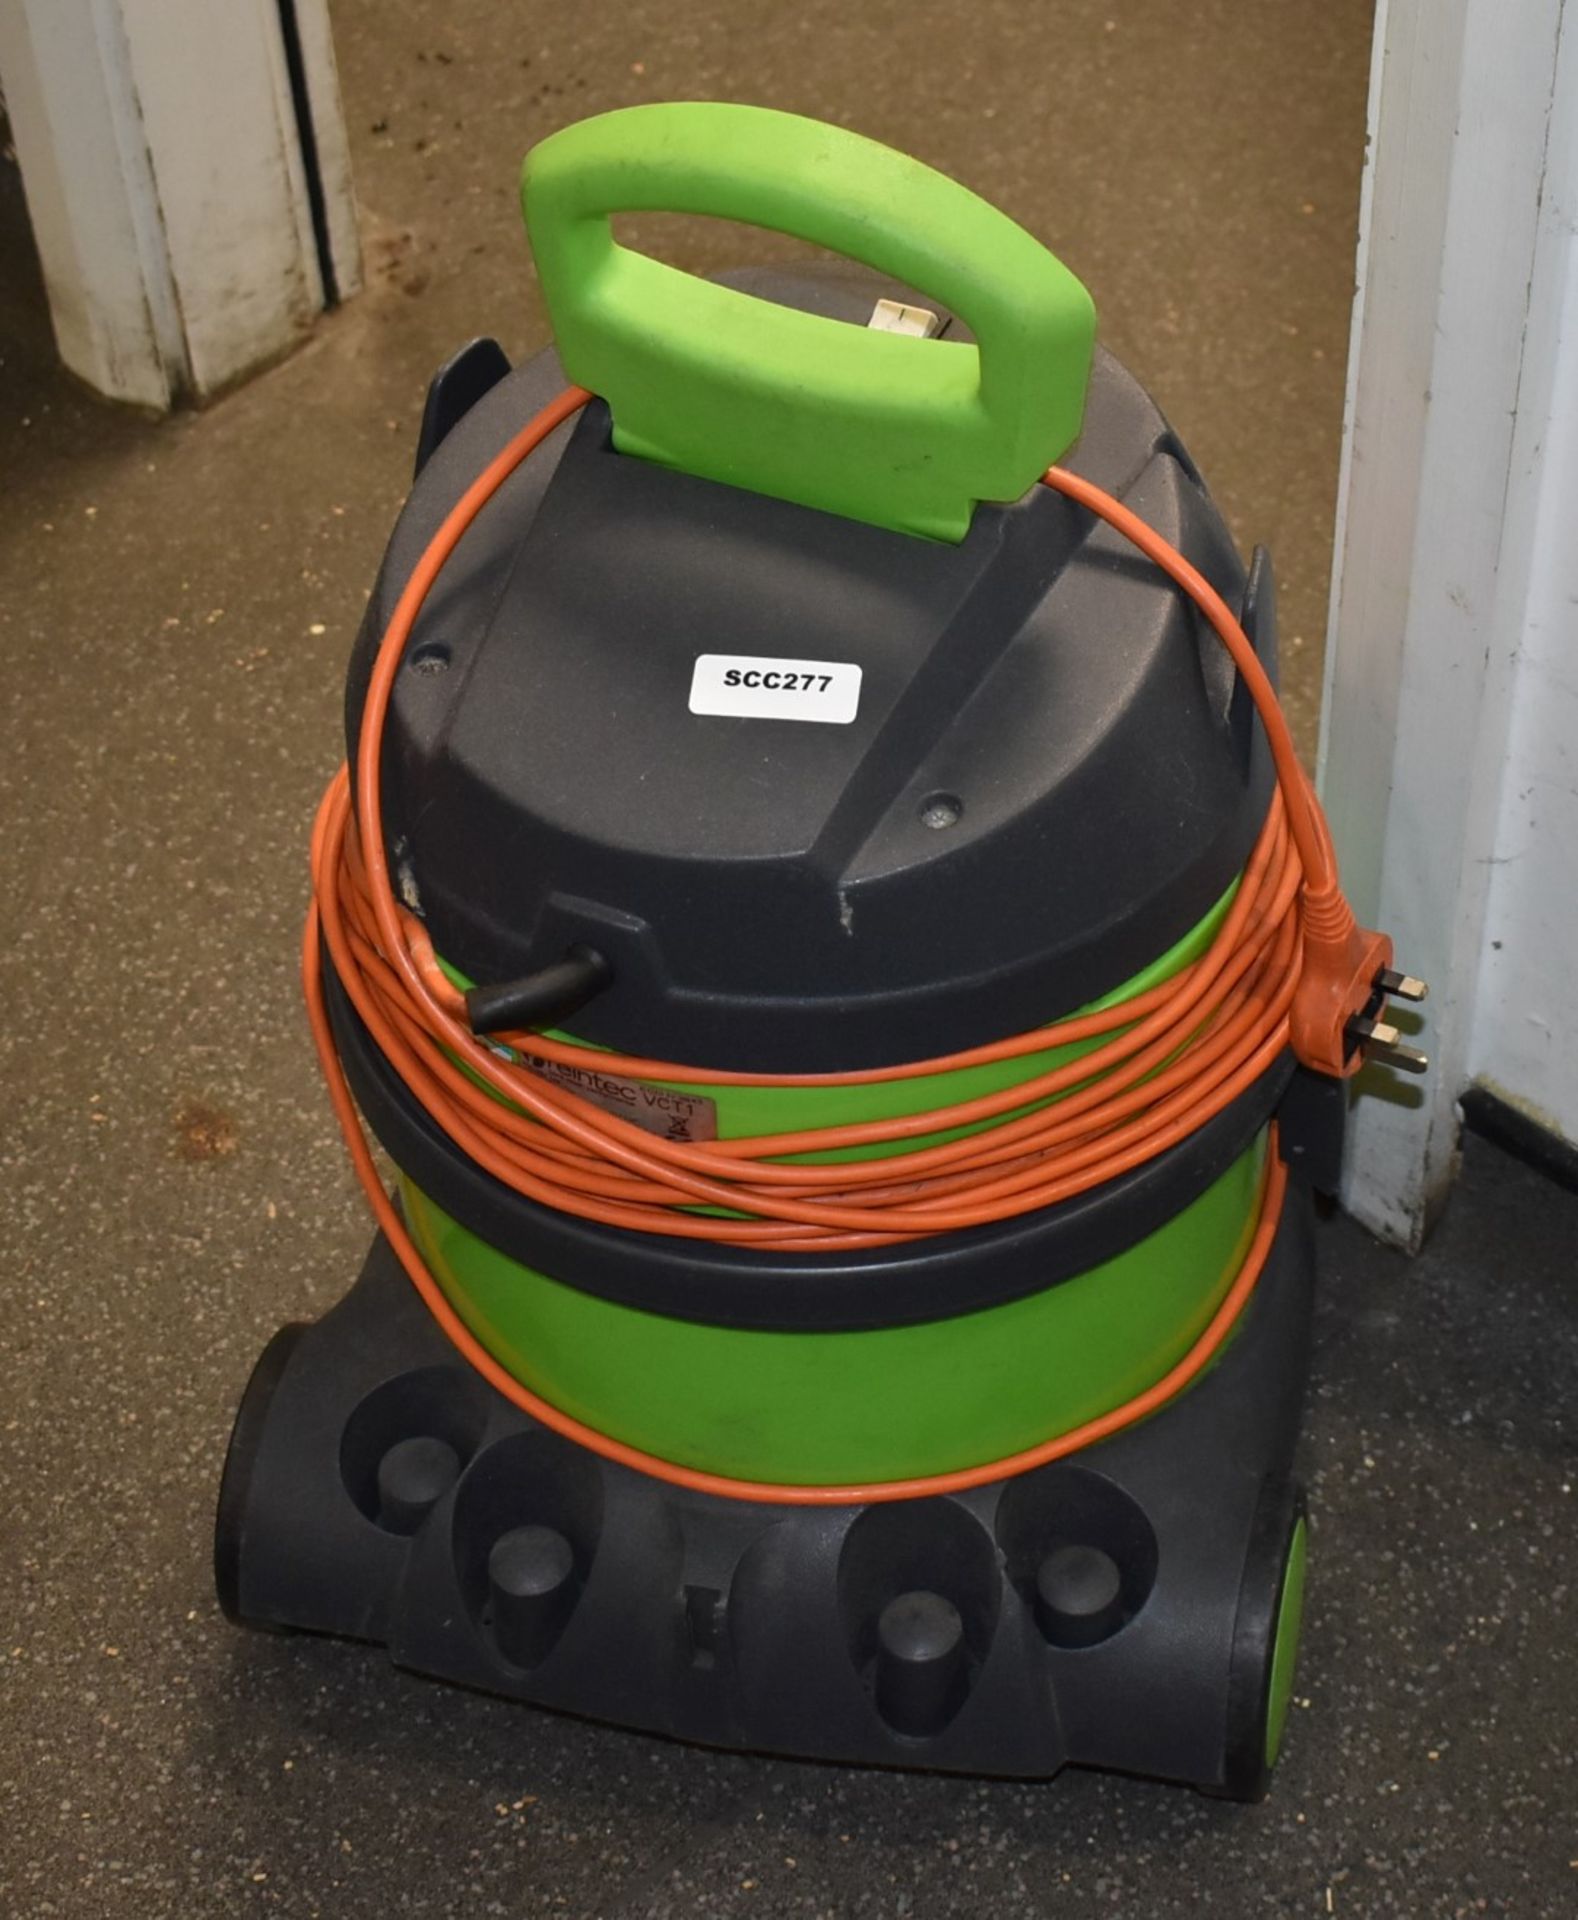 1 x Reintec VCT1 Vacuum Cleaner - Image 4 of 4